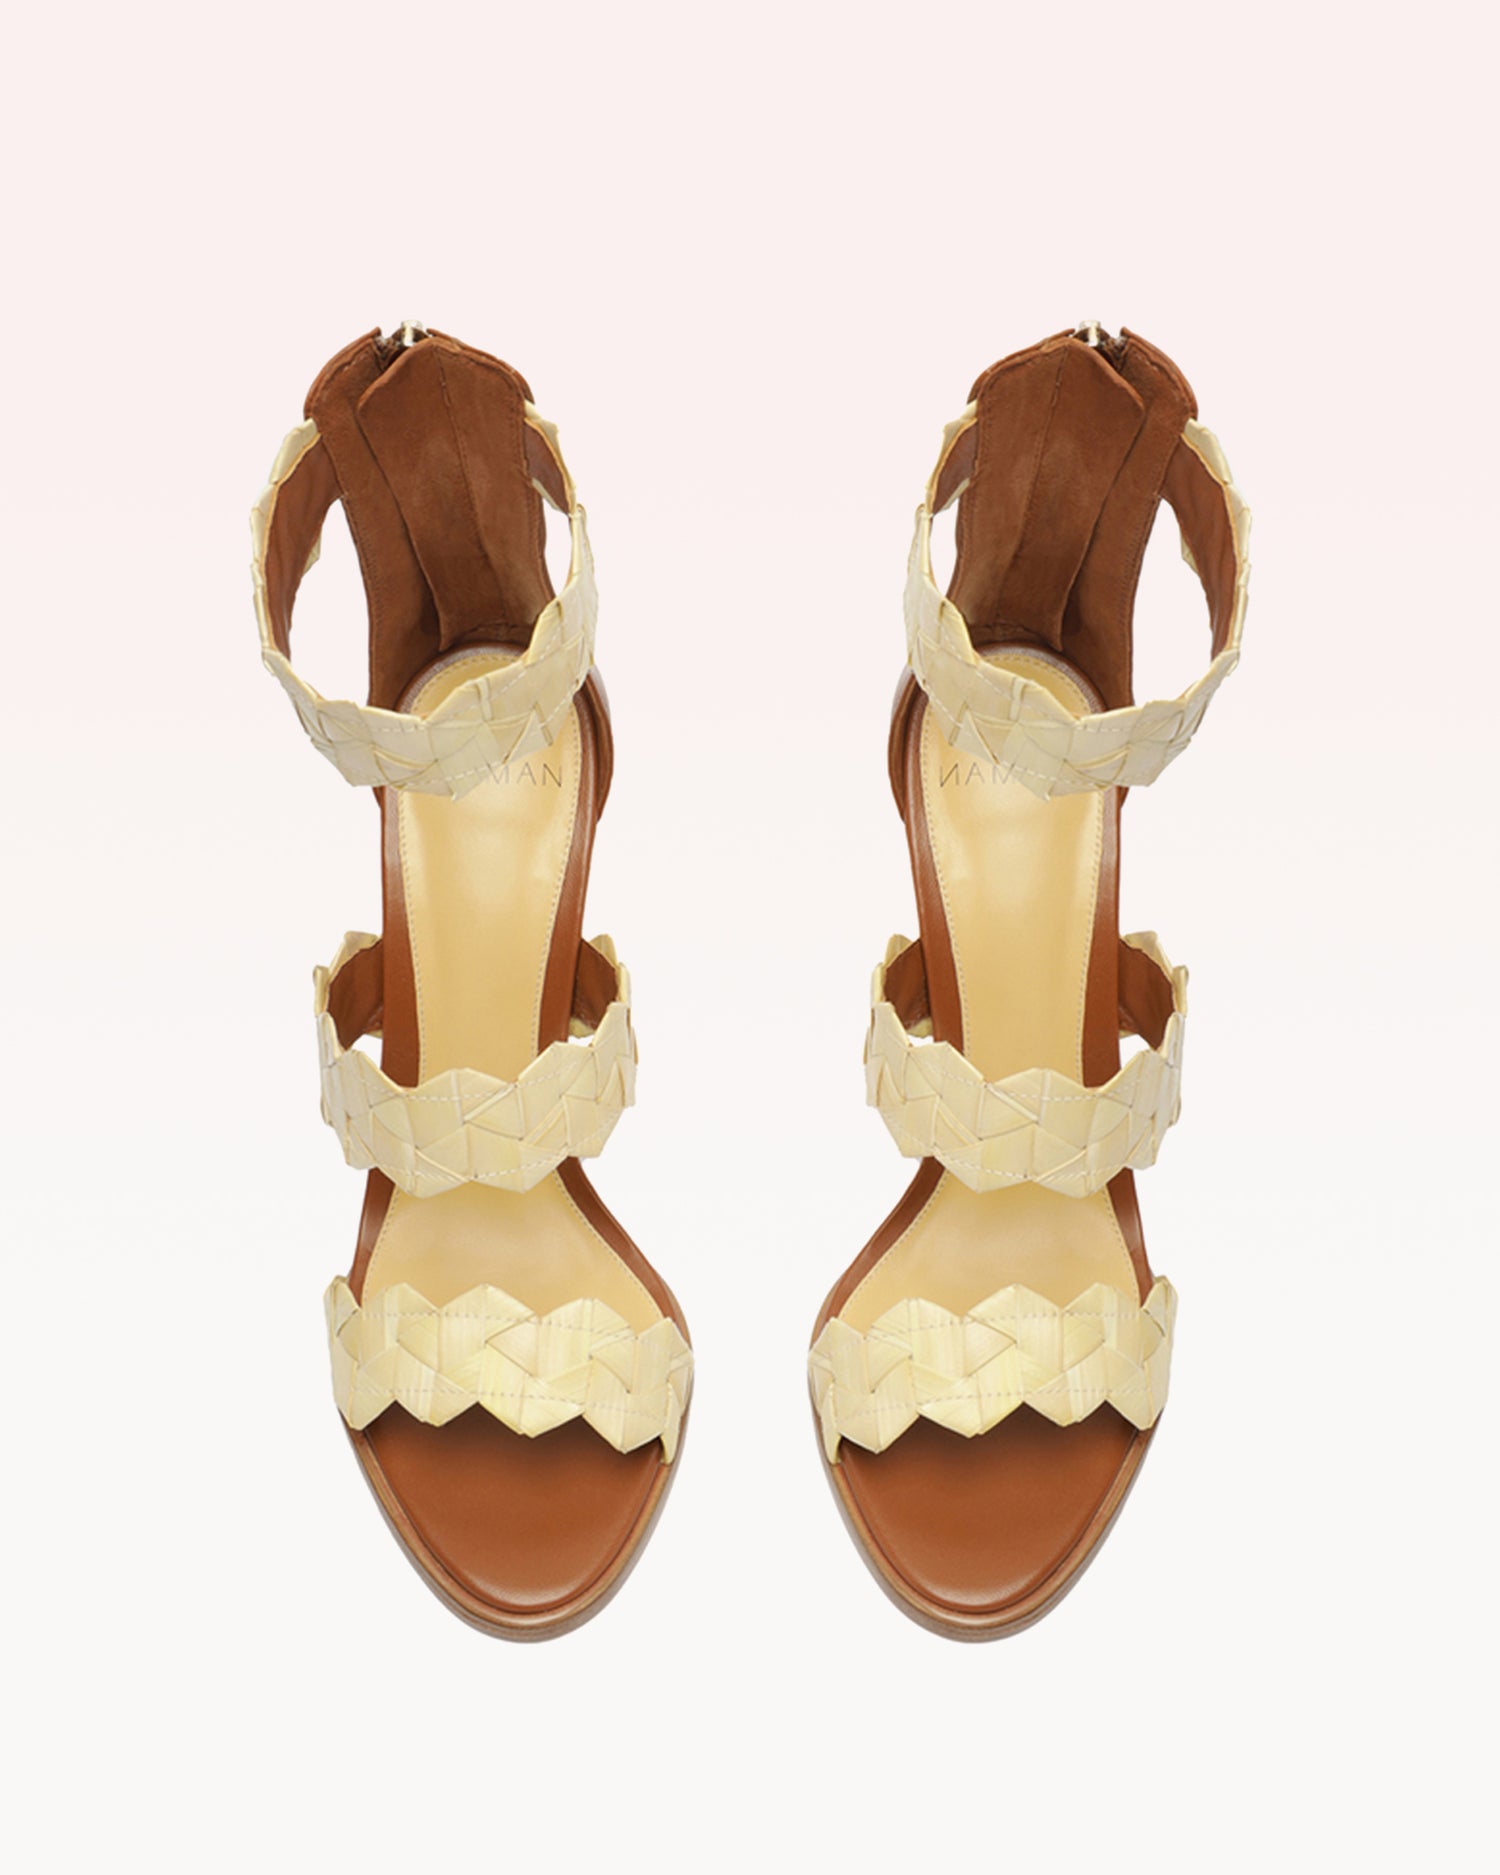 Emilia Natural & Cuoio Sandals S/23   